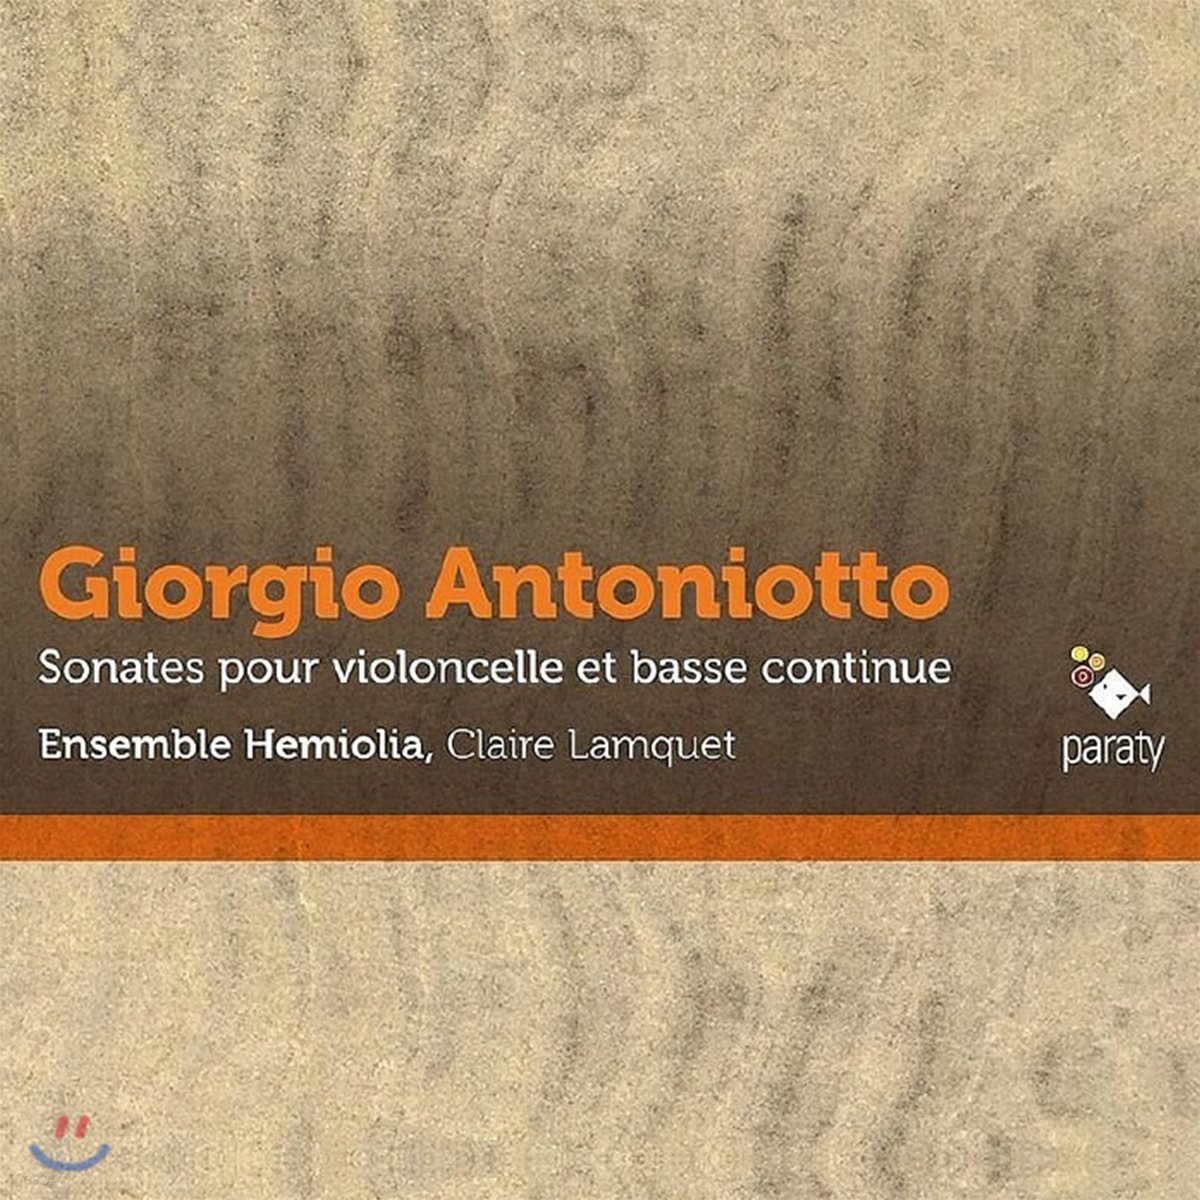 Ensemble Hemiolia 안토니오토: 첼로와 통주저음을 위한 소나타 (Antoniotto: Sonates pour violoncelle et basse continue) 